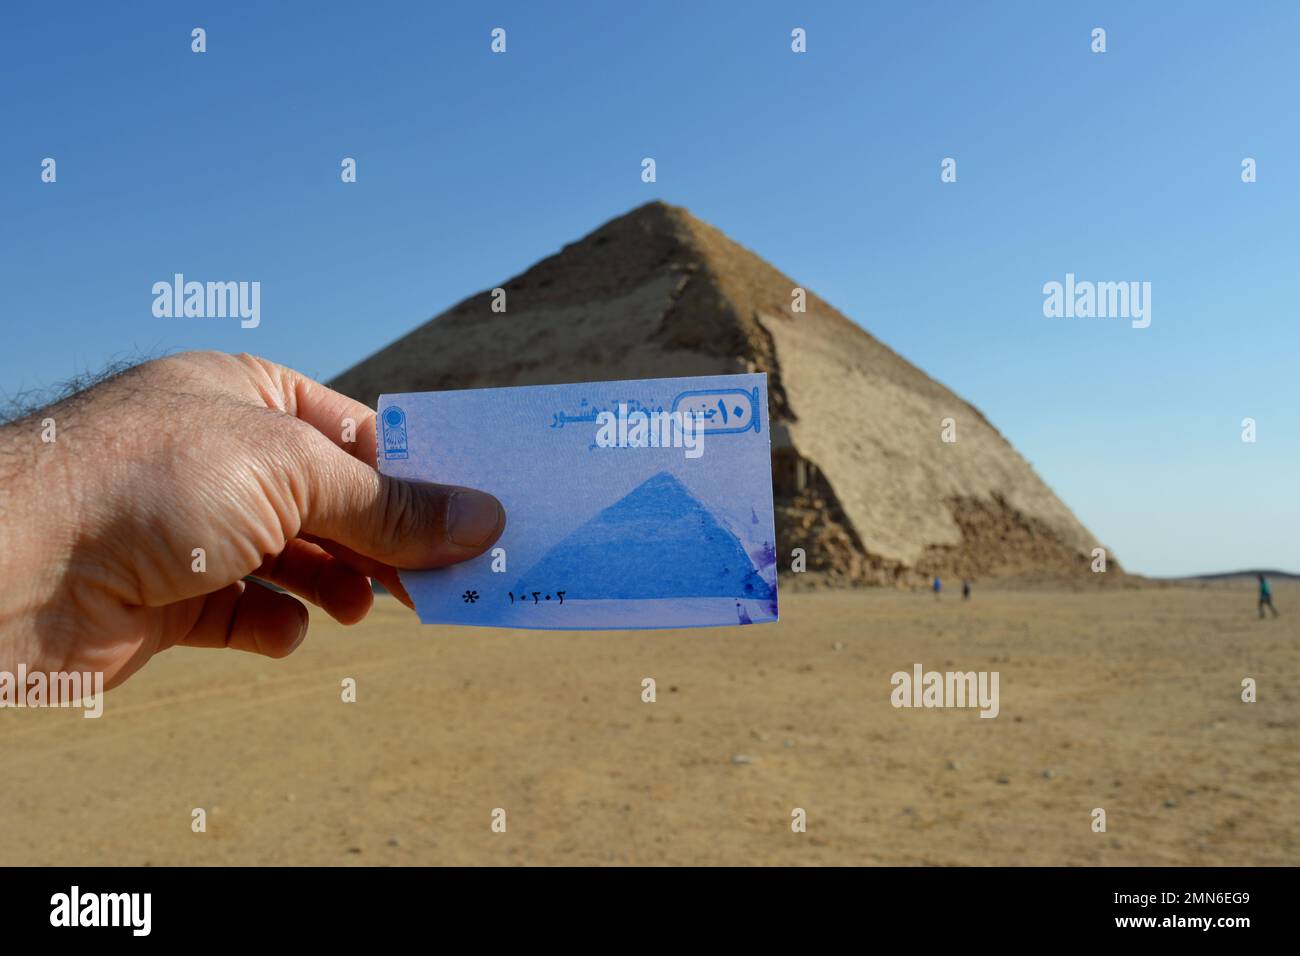 Das Ticket für die verbogene Pyramide von König Sneferu an ihrem Standort, Ein einzigartiges Beispiel für die frühe Pyramidenentwicklung in Ägypten, das sich in Dahshur Badrashin Ba befindet Stockfoto